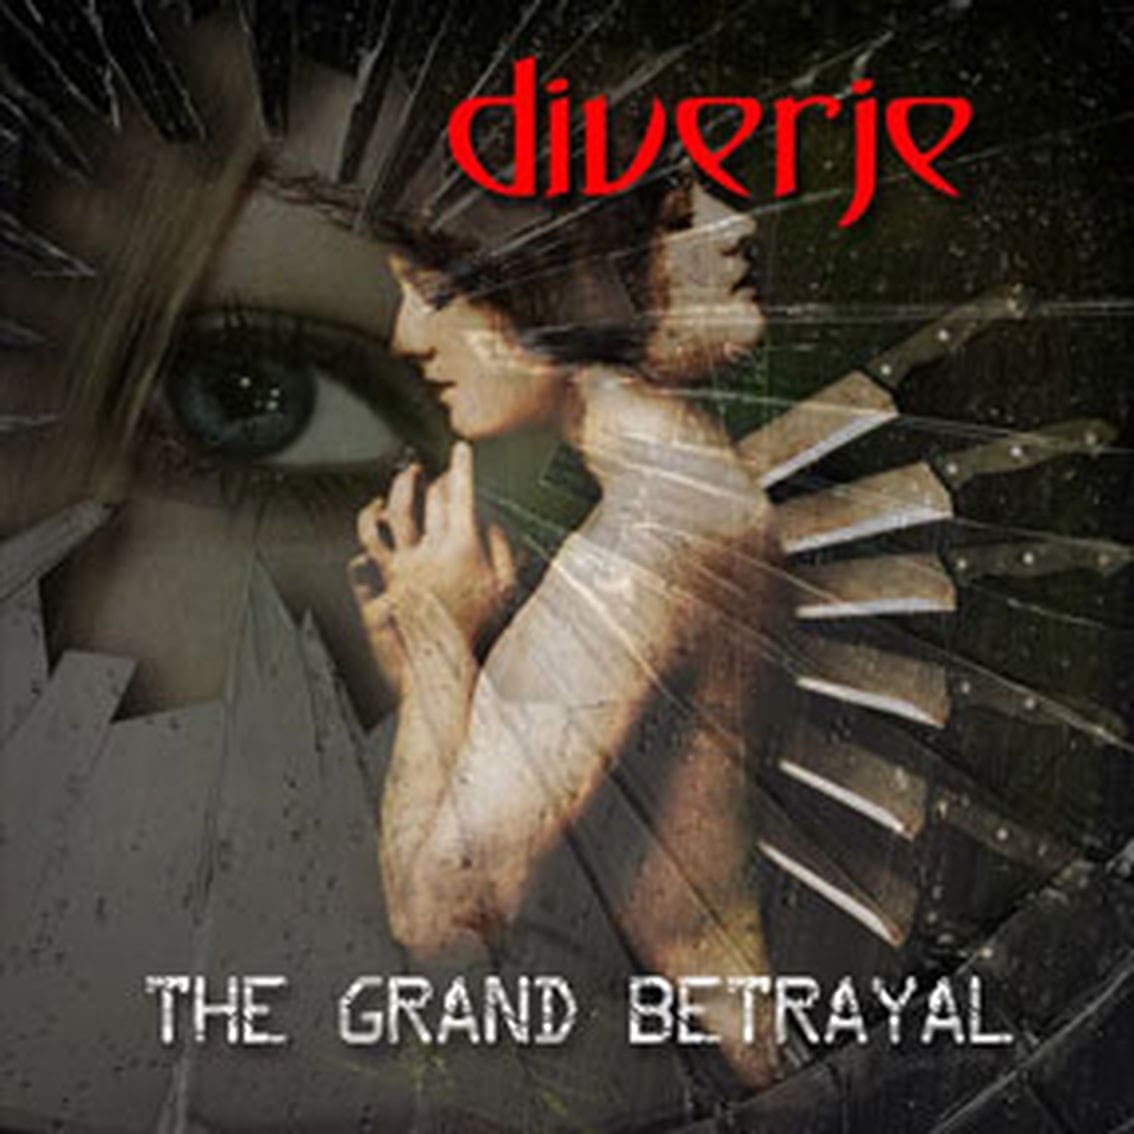 Diverje drops 'The Grand Betrayal' album